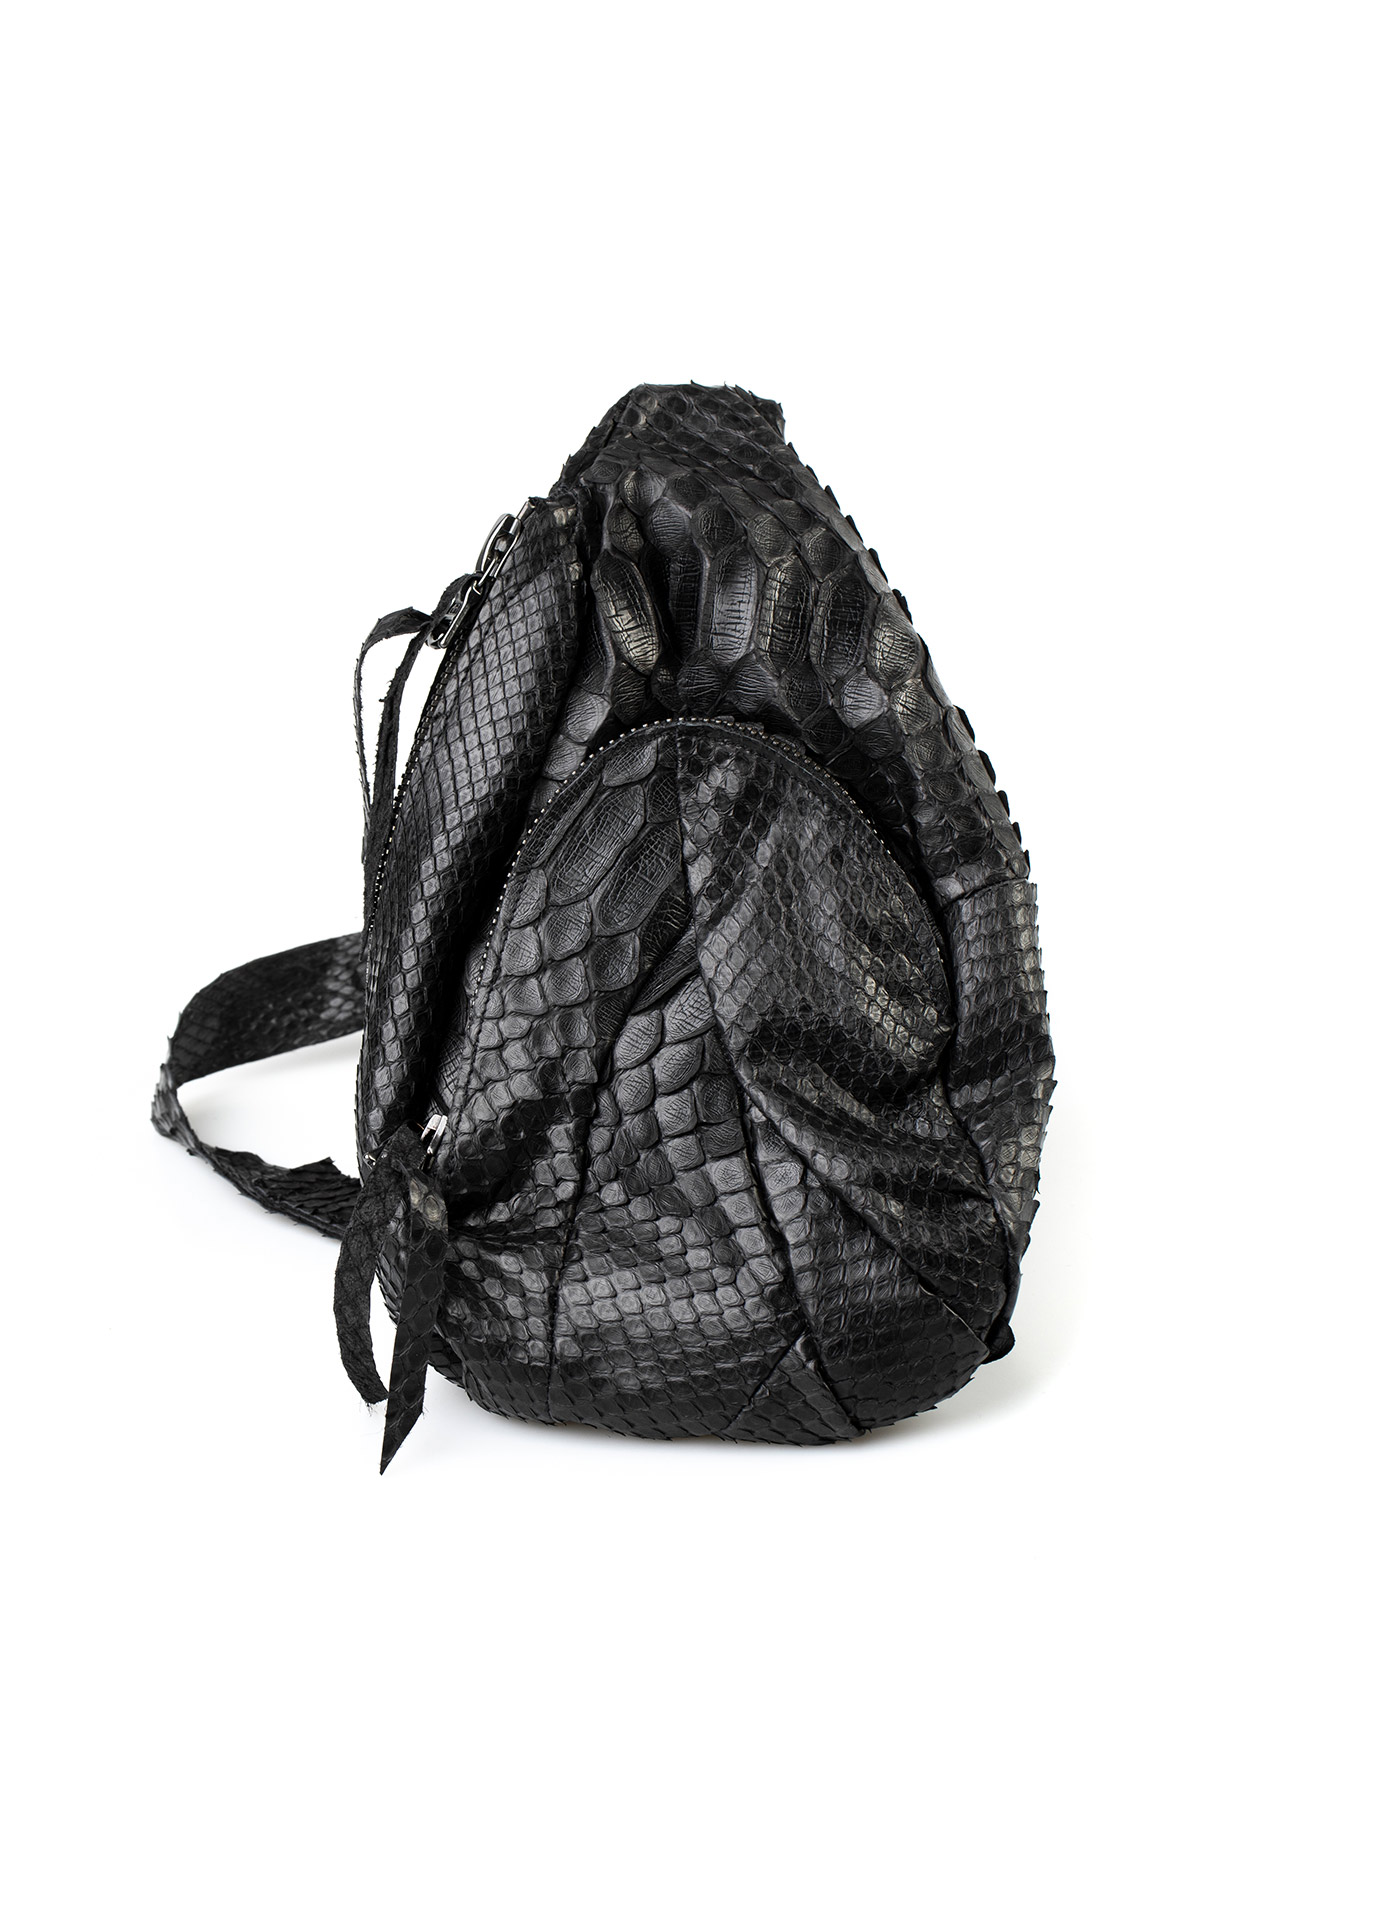 hide-m | LEON EMANUEL BLANCK Dealer Bag, black python leather